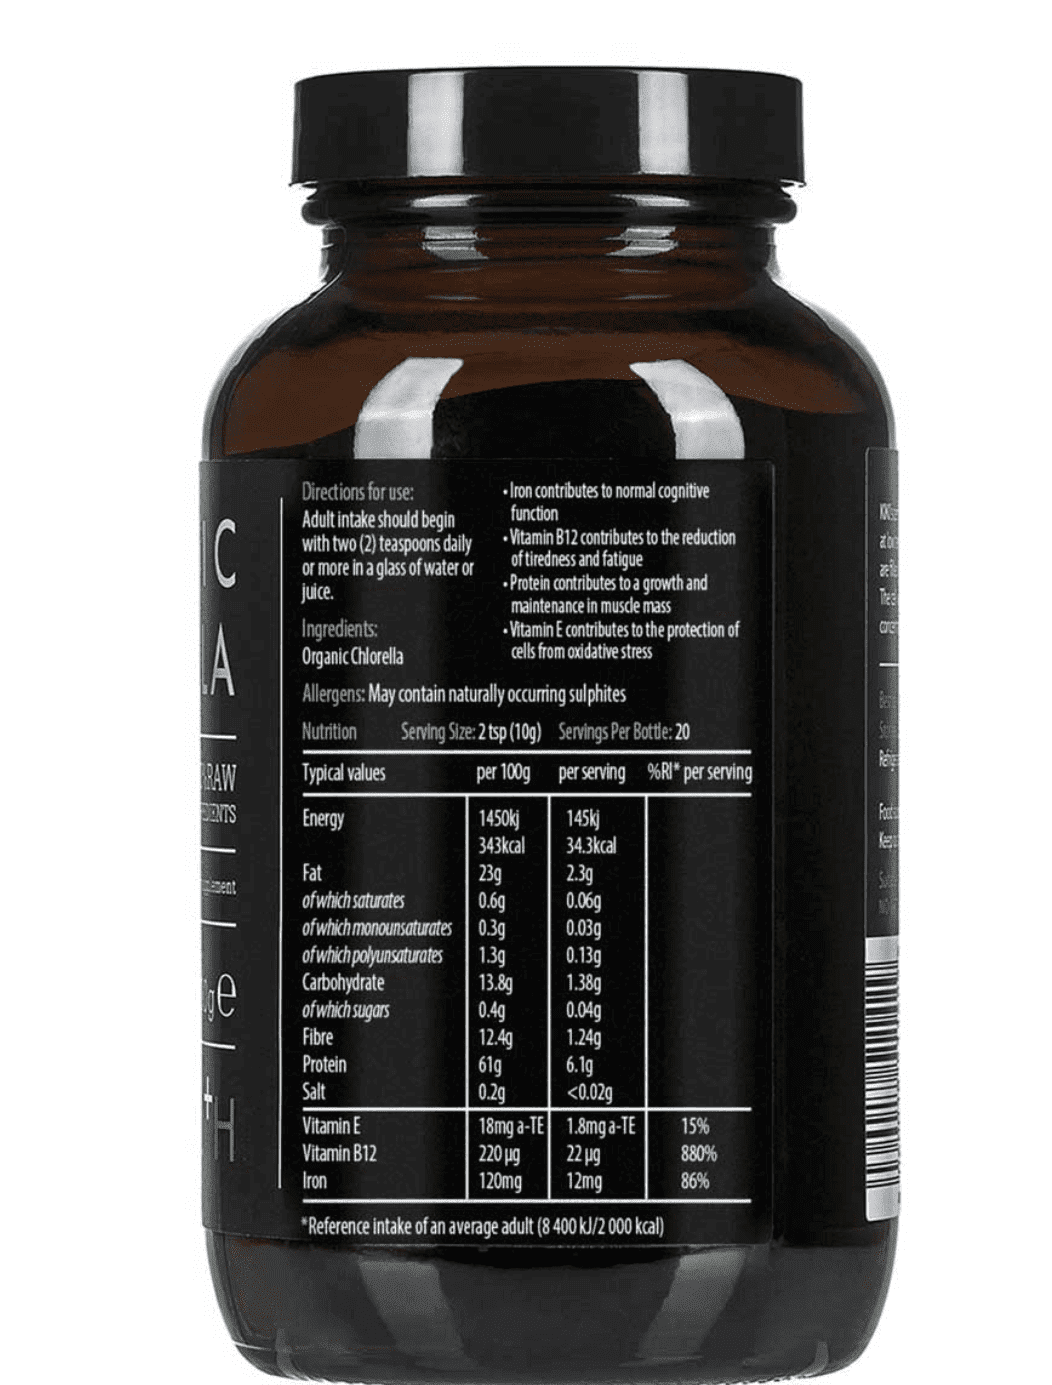 Kiki Health - Food supplements "organic chlorella" - 200g - Kiki Health - Ethni Beauty Market